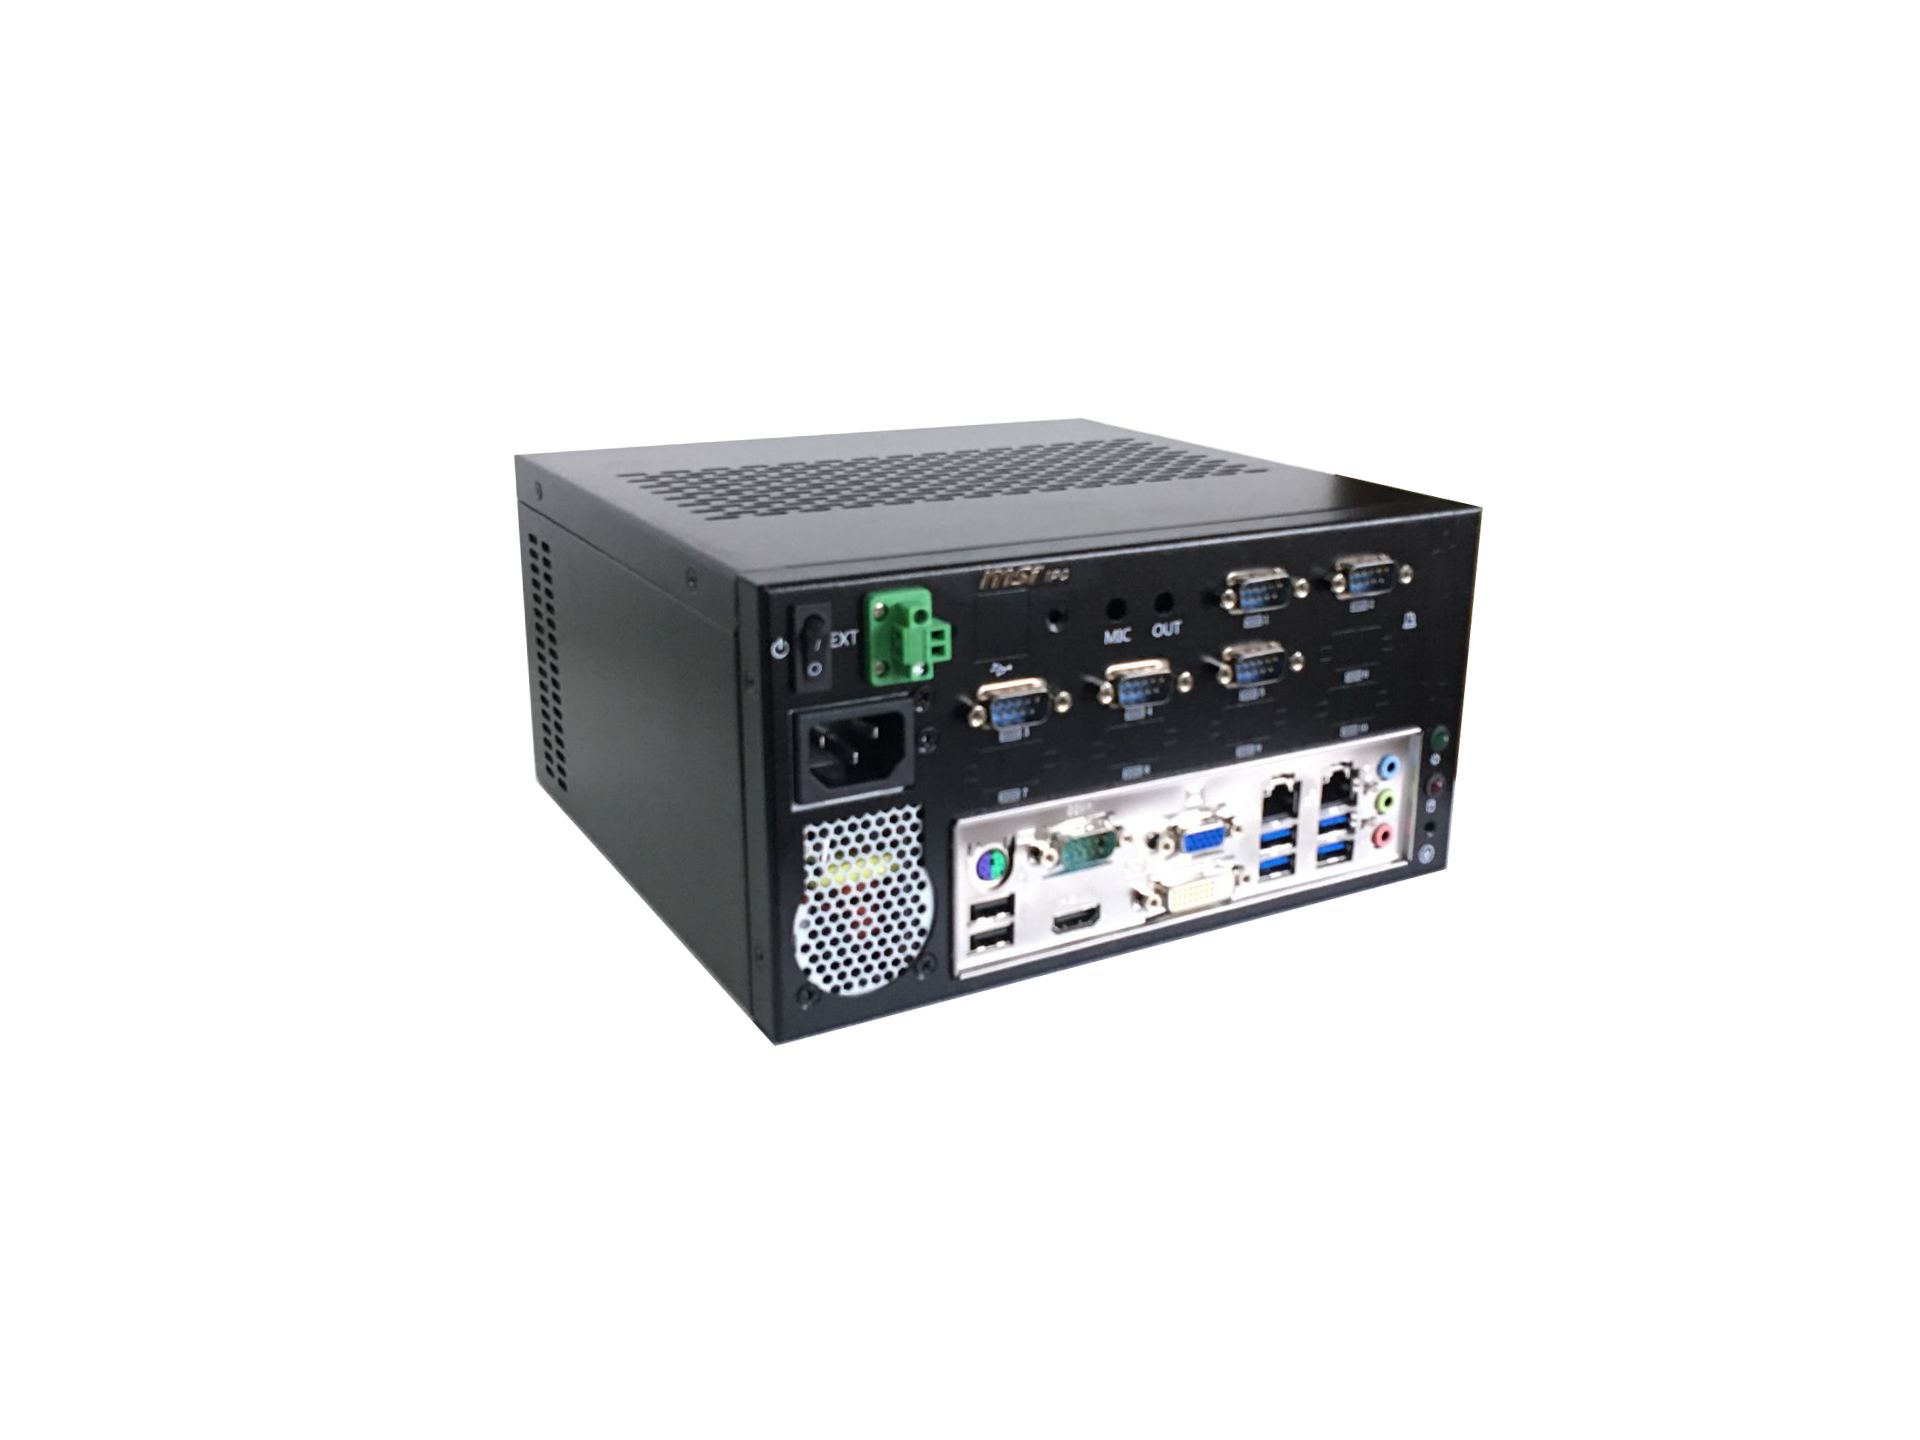 IPC-605MB-98E1壁挂式工控机在智能印刷设备中视觉检测应用